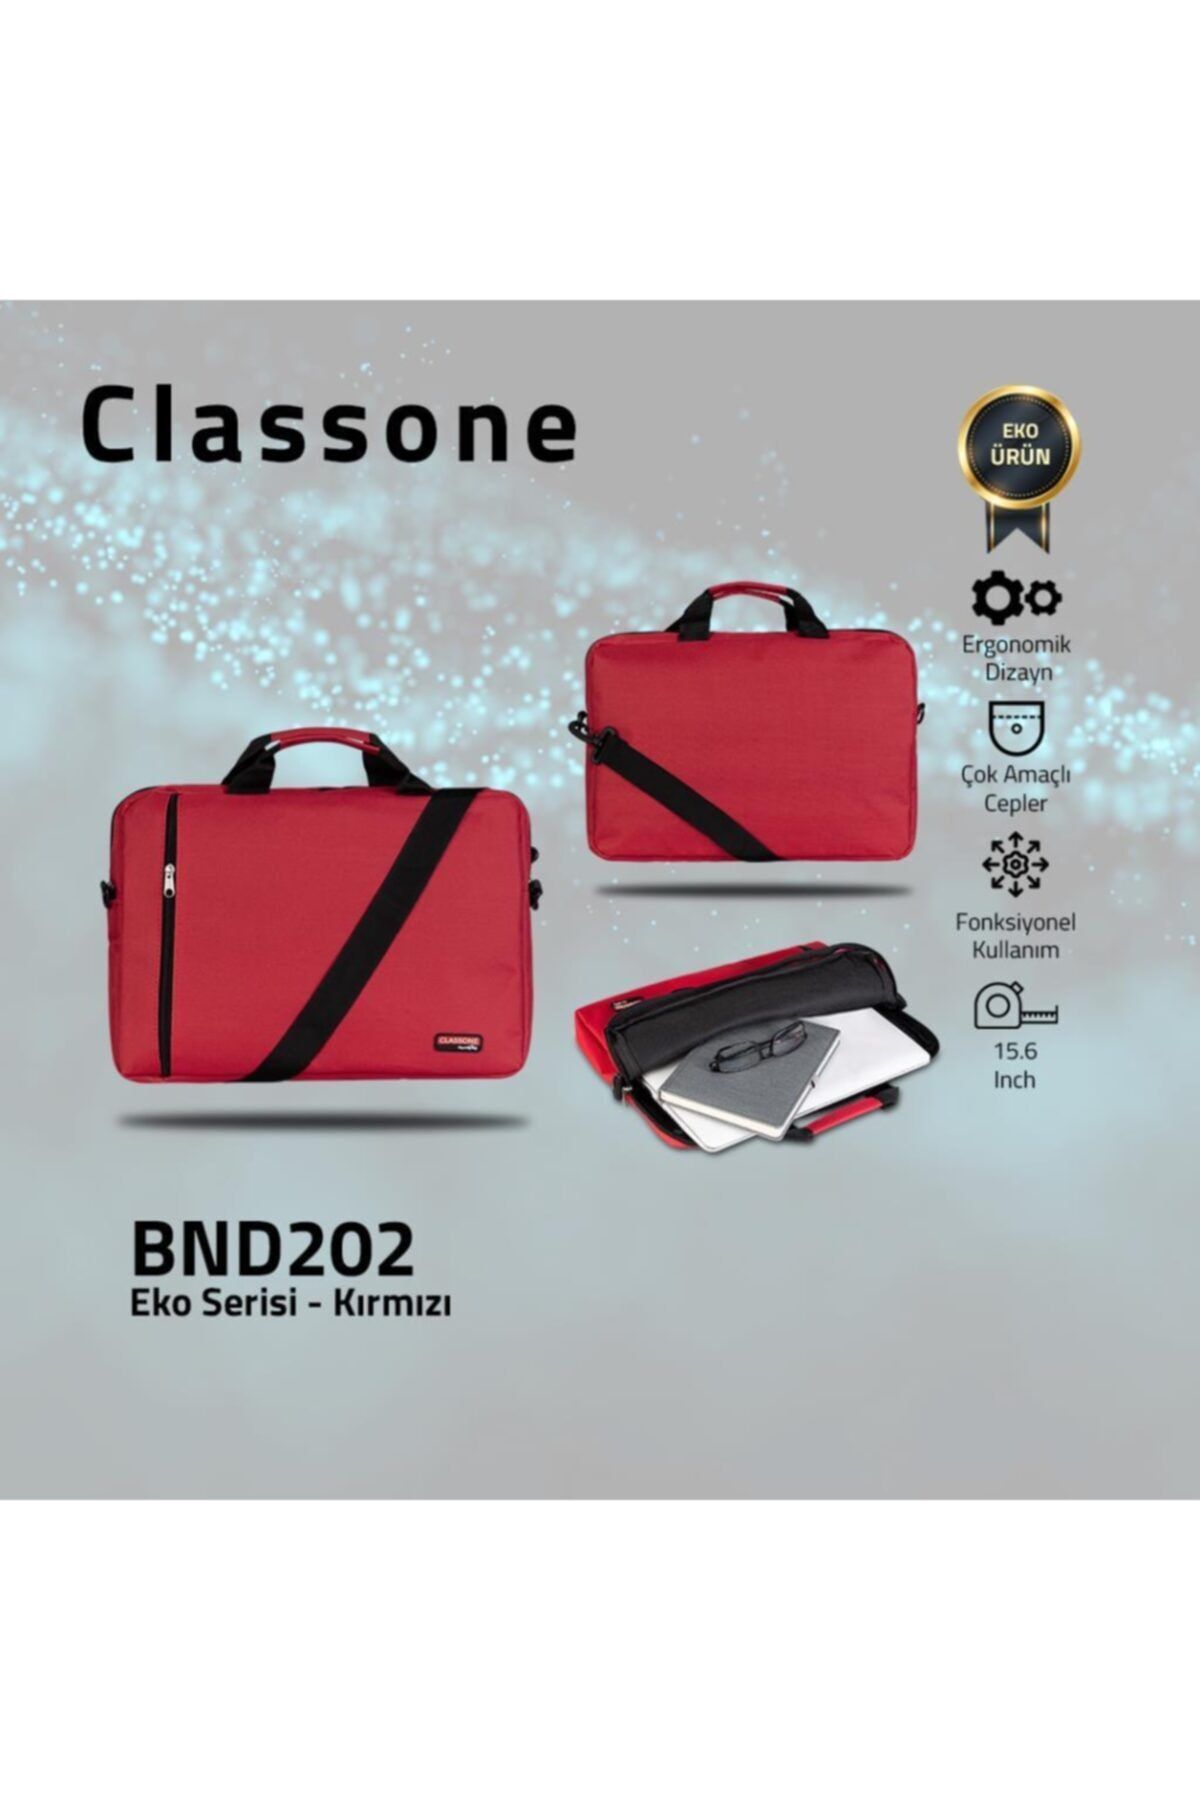 Classone Bnd202 15.6 Inç Eko Serisi Laptop, Notebook El Çantası -kırmızı